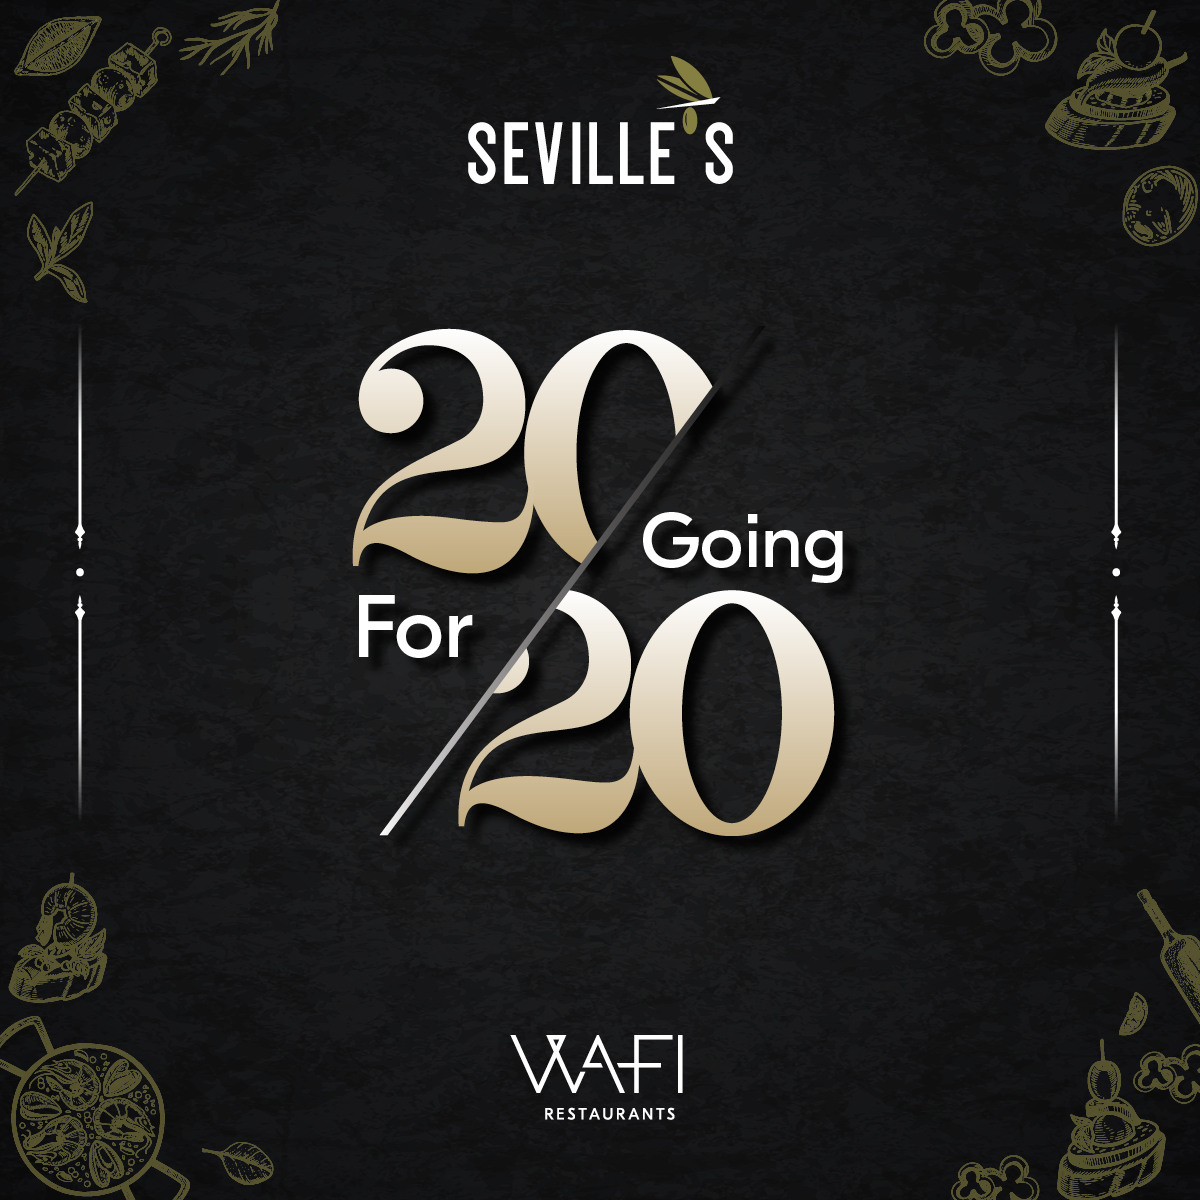 Seville's 20 Going For 20 Social Media Post